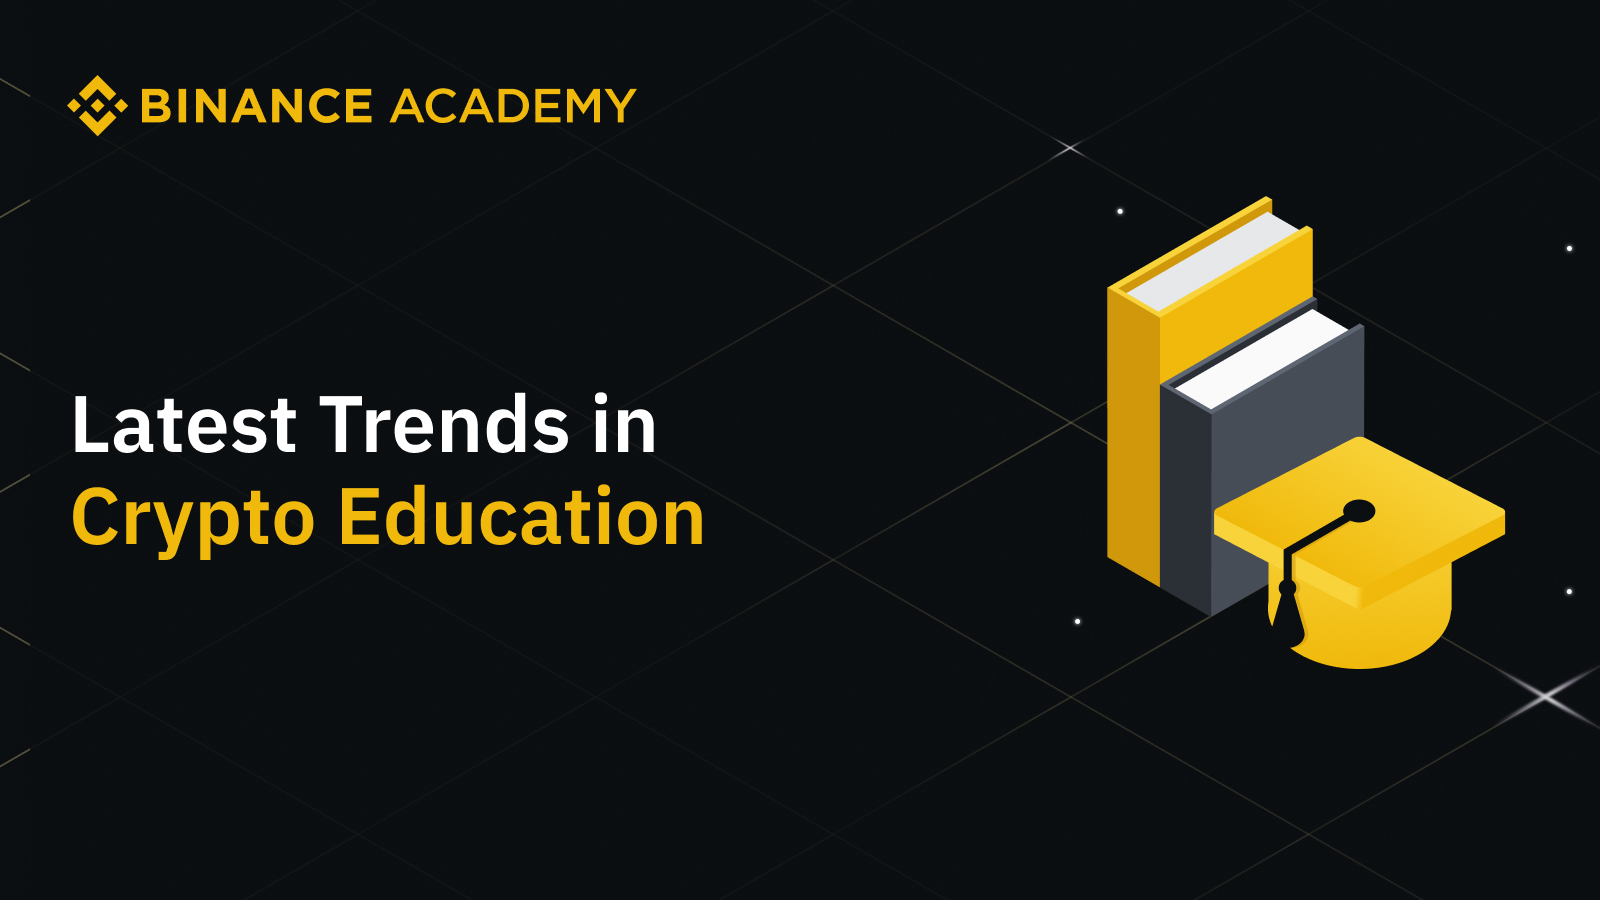 Binance Academy anunță o creștere de 62% a utilizatorilor ce se educă activ despre cripto; piețele emergente conduc